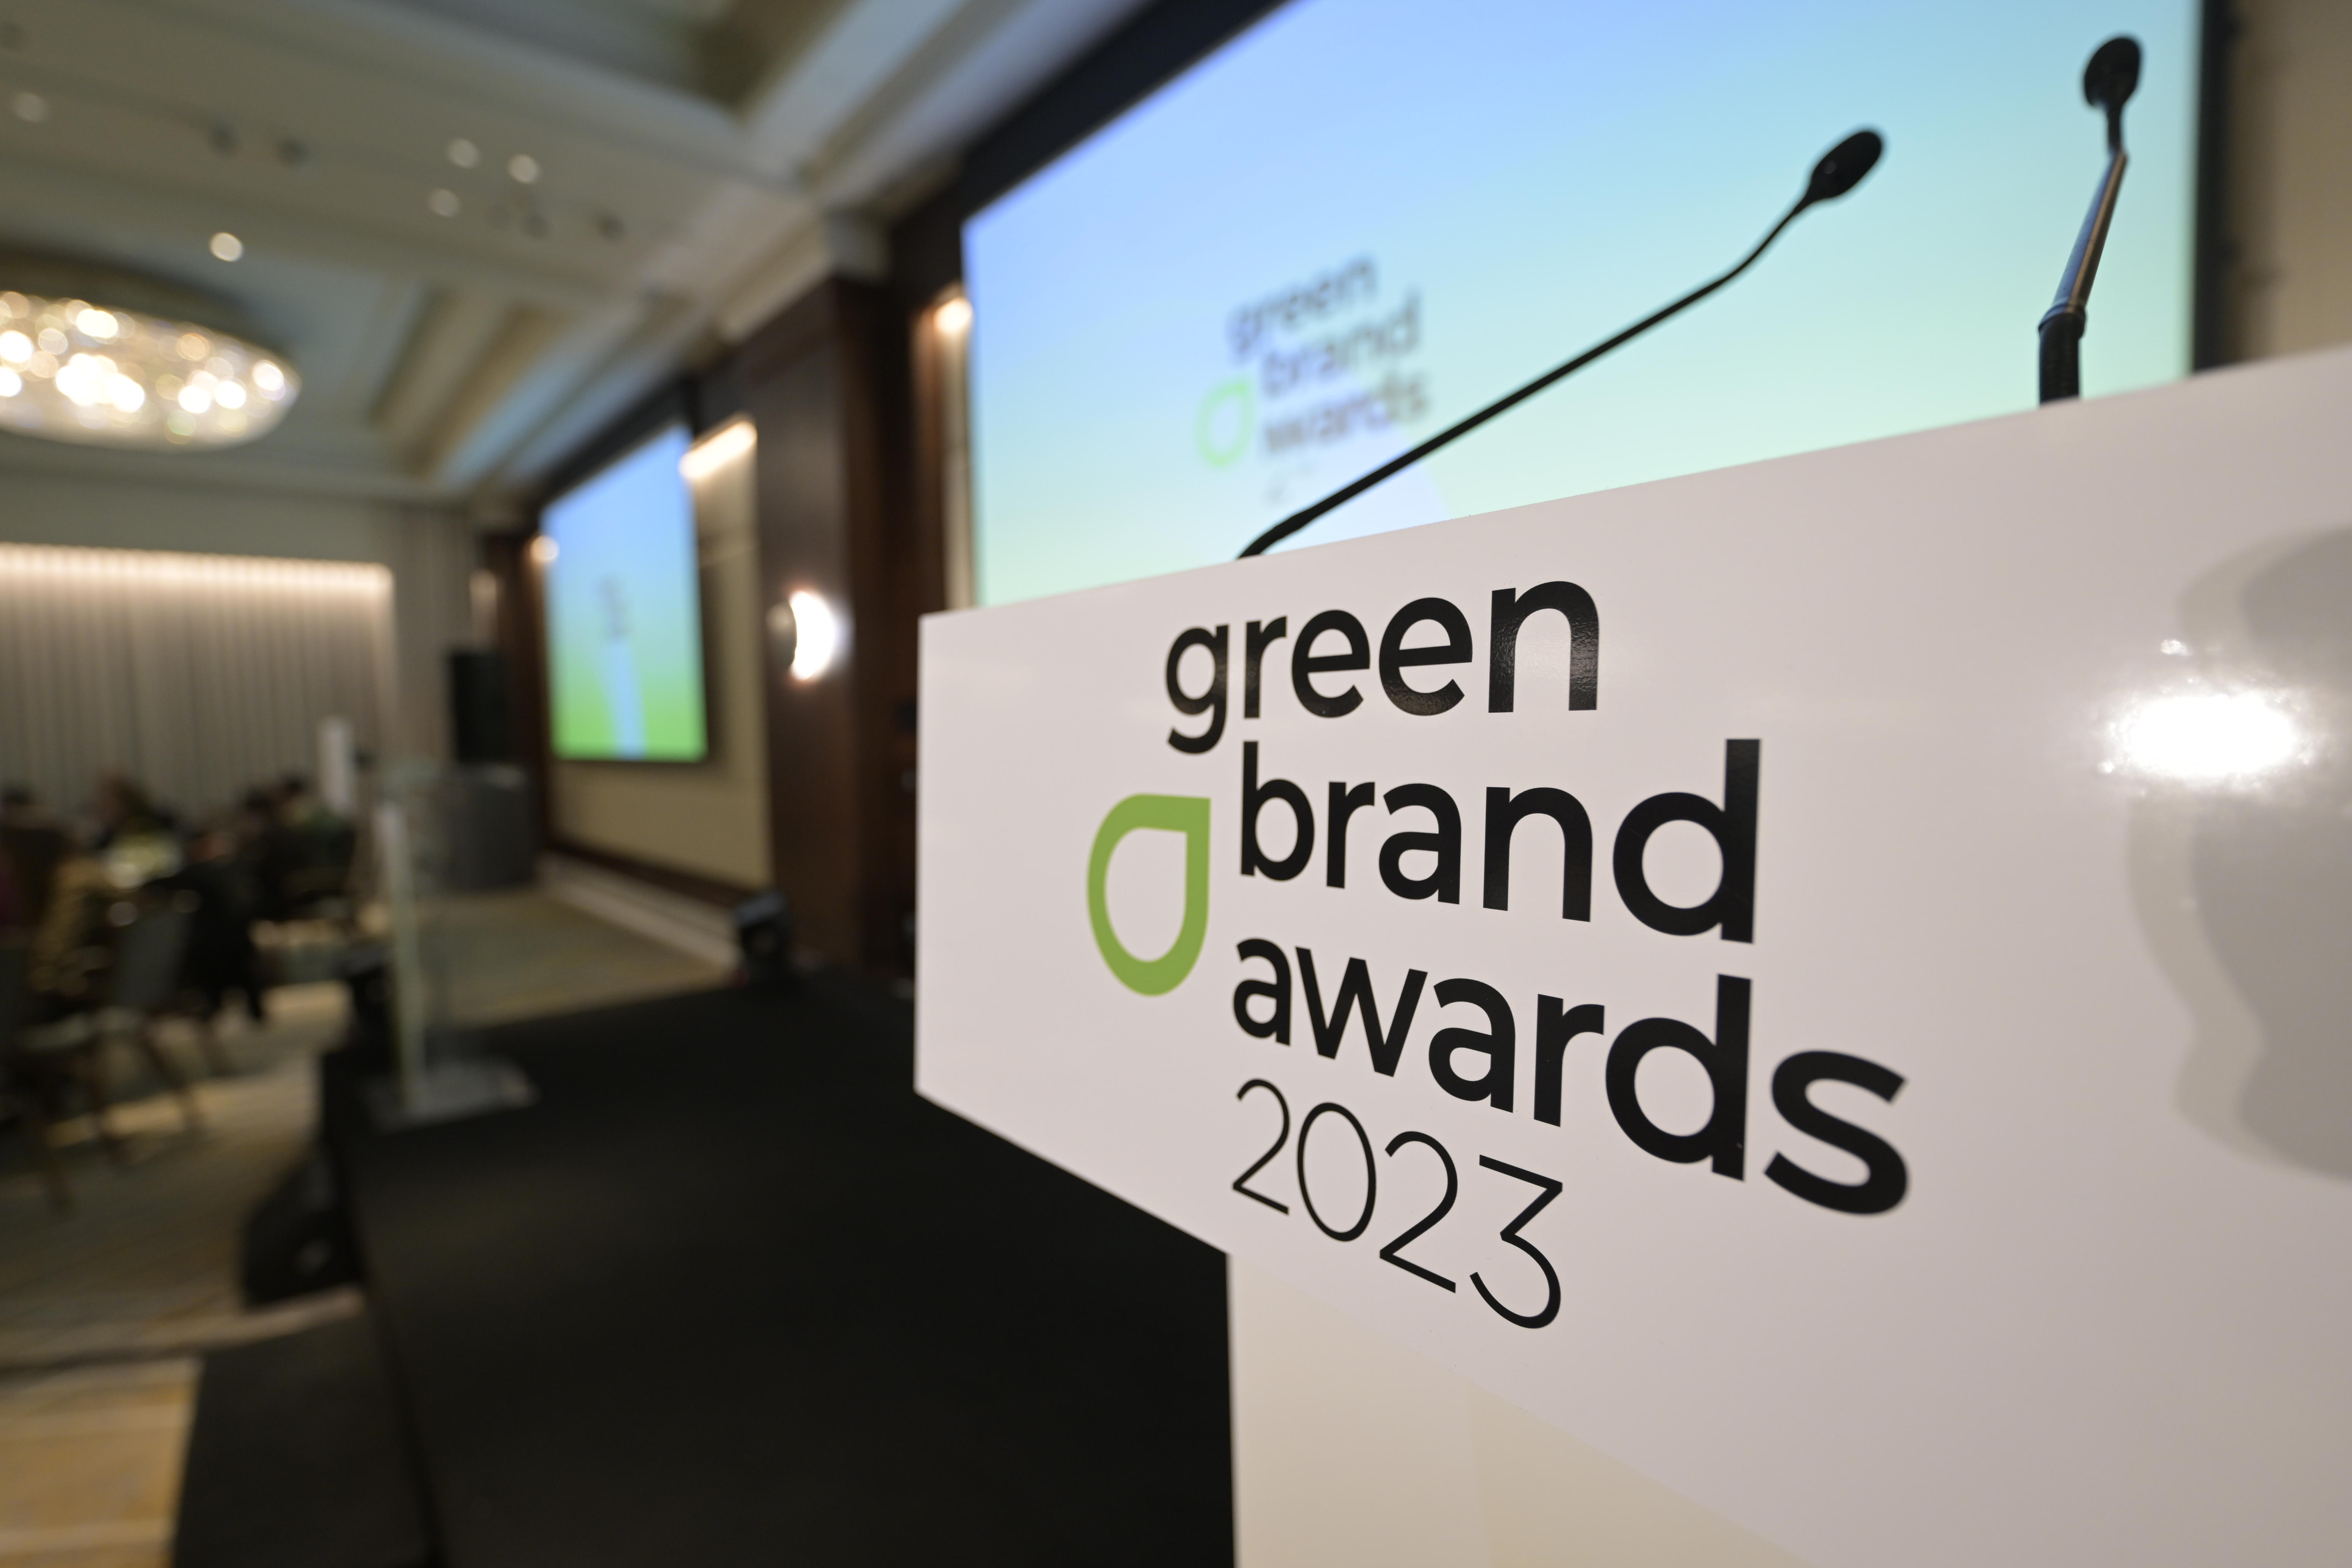 Ακόμη δύο Βραβεία για την Ομάδα της Λακιώτης στα Green Brand Awards 2023!